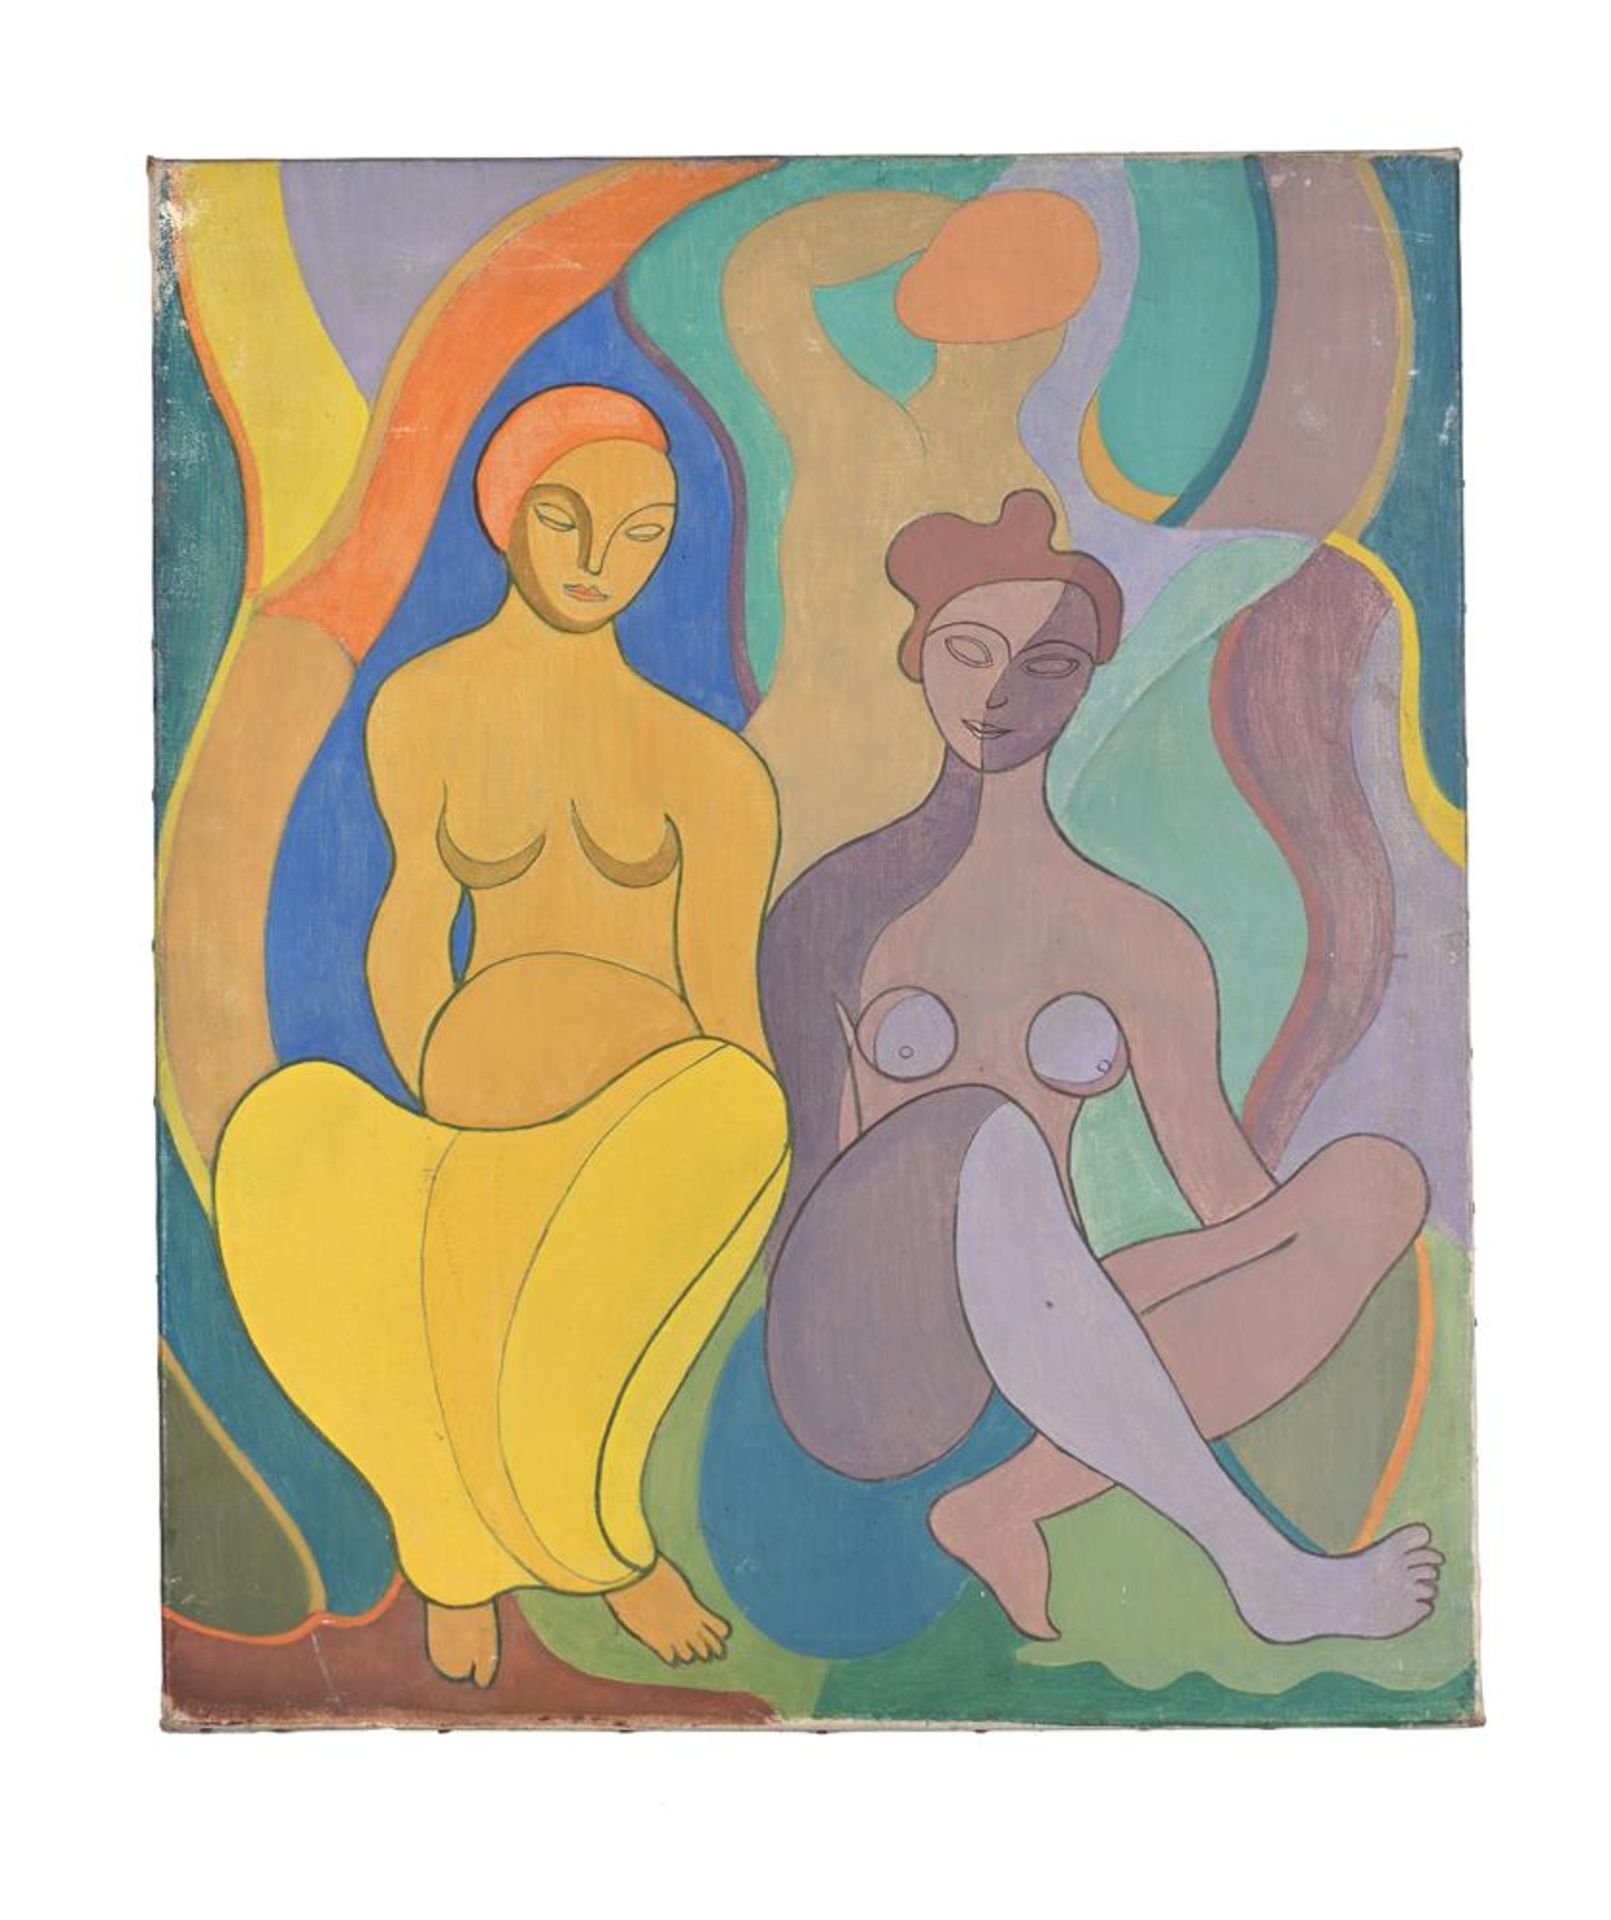 λ JOHN CLUYSENAAR (BELGIAN 1899-1986), TWO FEMALE NUDES, SEATED - Image 2 of 5